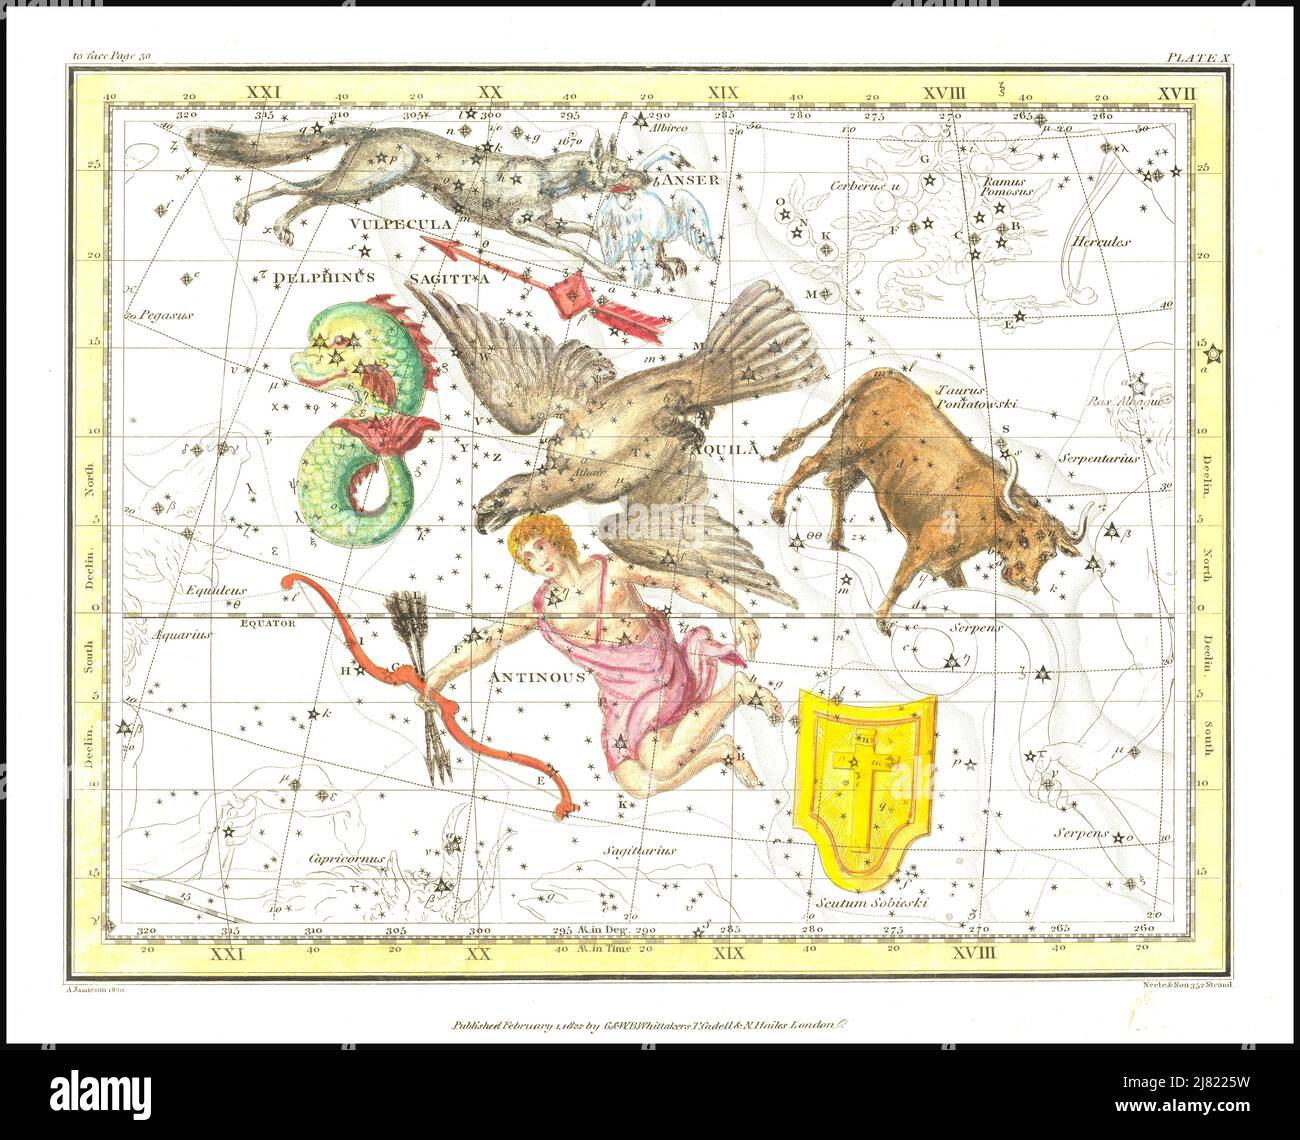 Alexander Jamieson - Aquila, Antinous, Scutum, Taurus, Sagittarius, Vulpecula, Anser - Delphinus - Plate 10 - 1822 Stock Photo